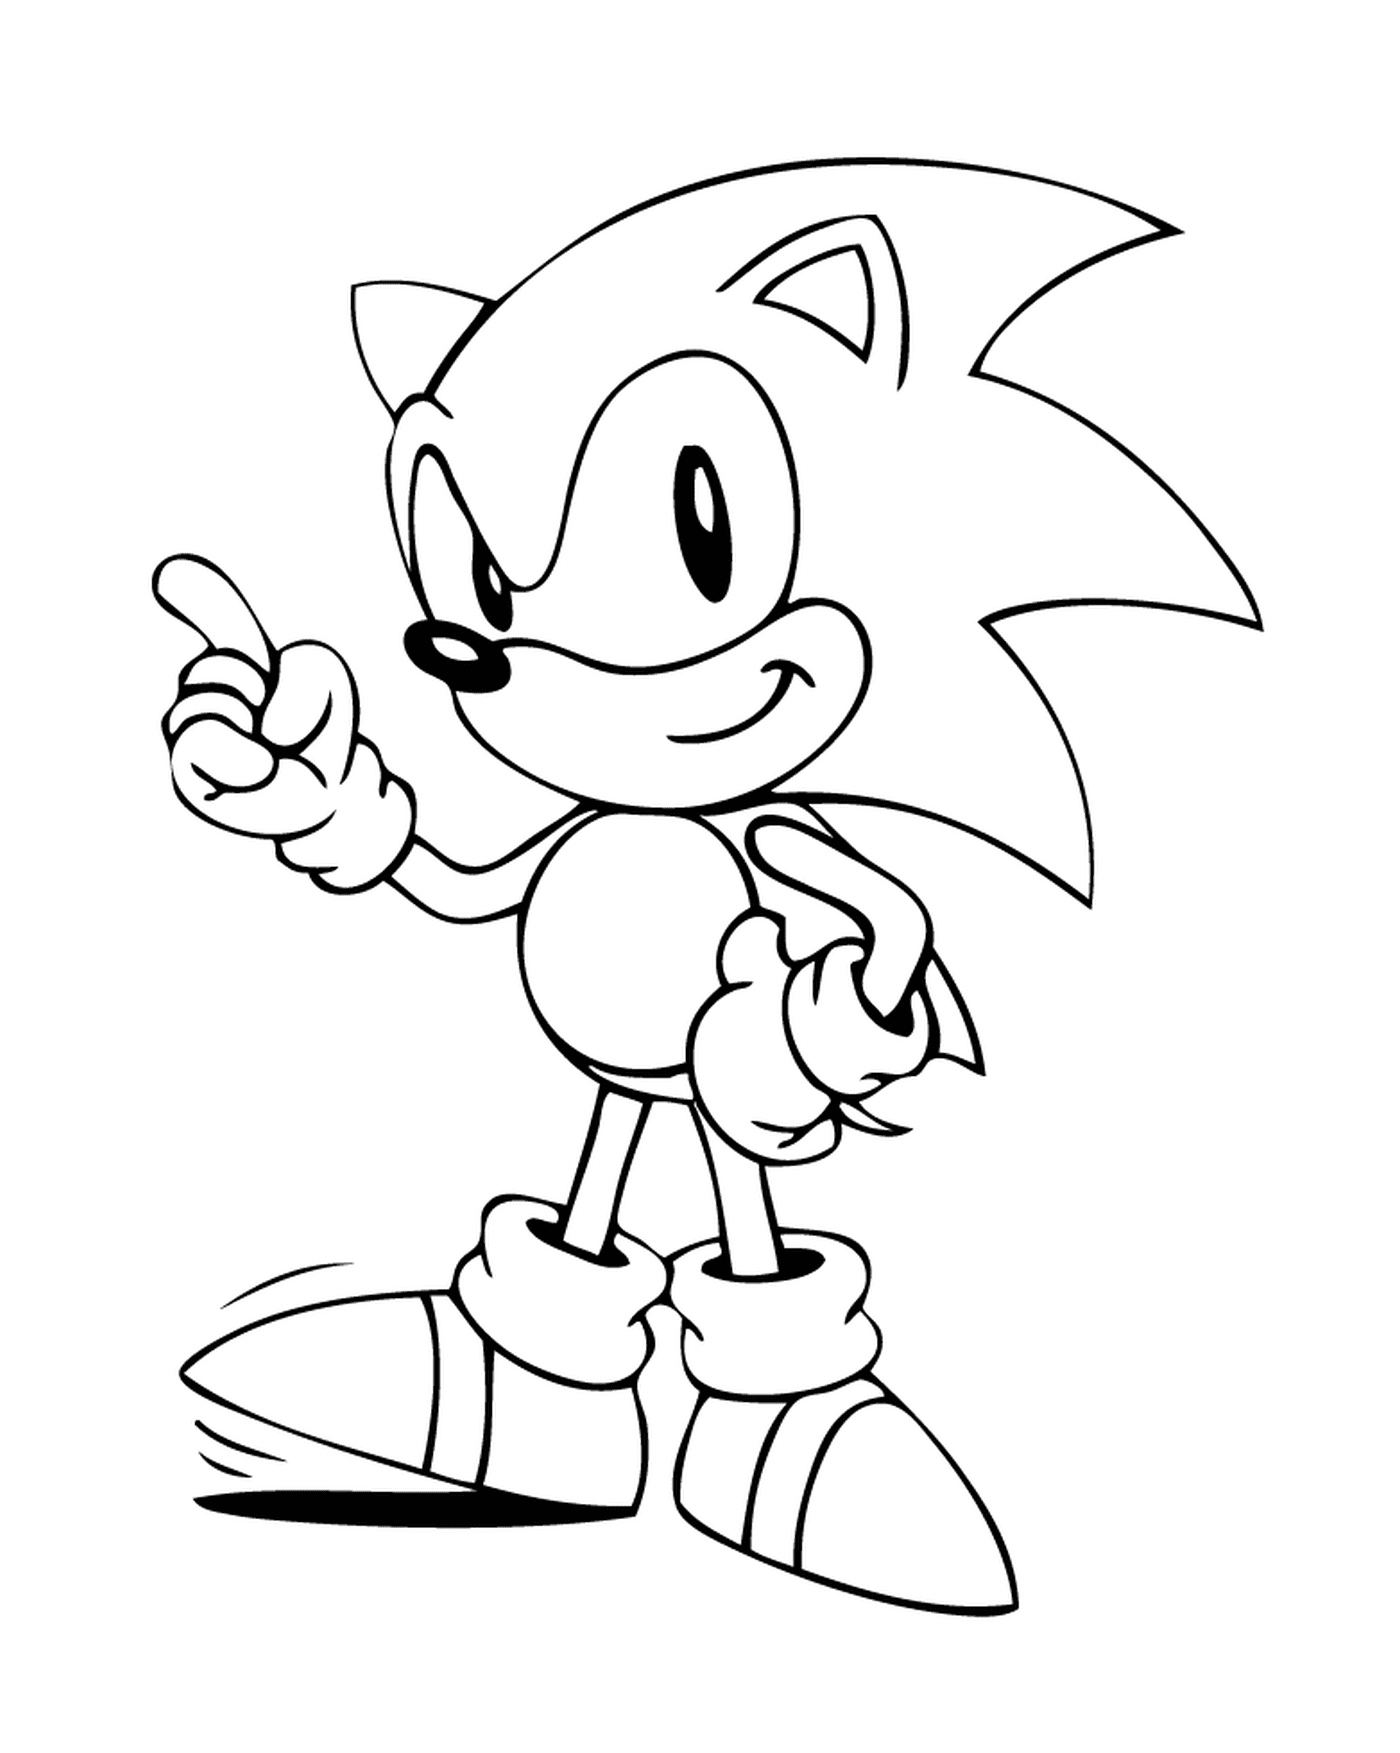   Sonic prêt à courir vite 